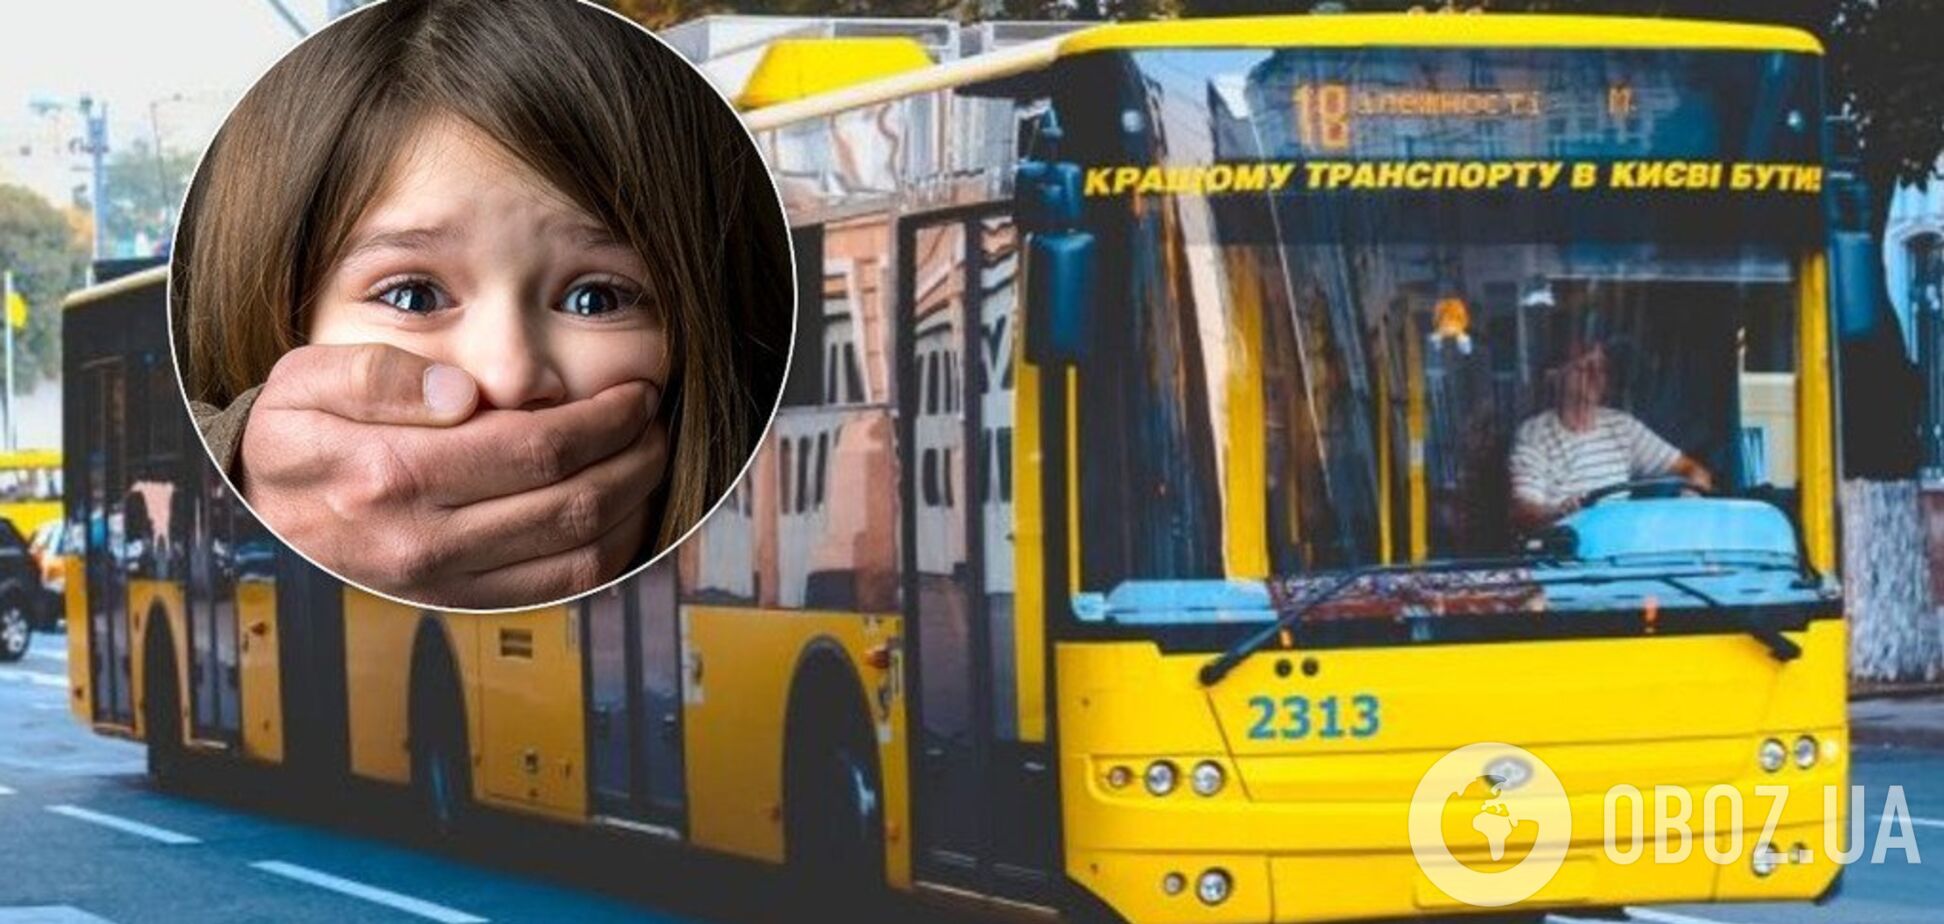 У Києві педофіл напав на дівчинку у тролейбусі